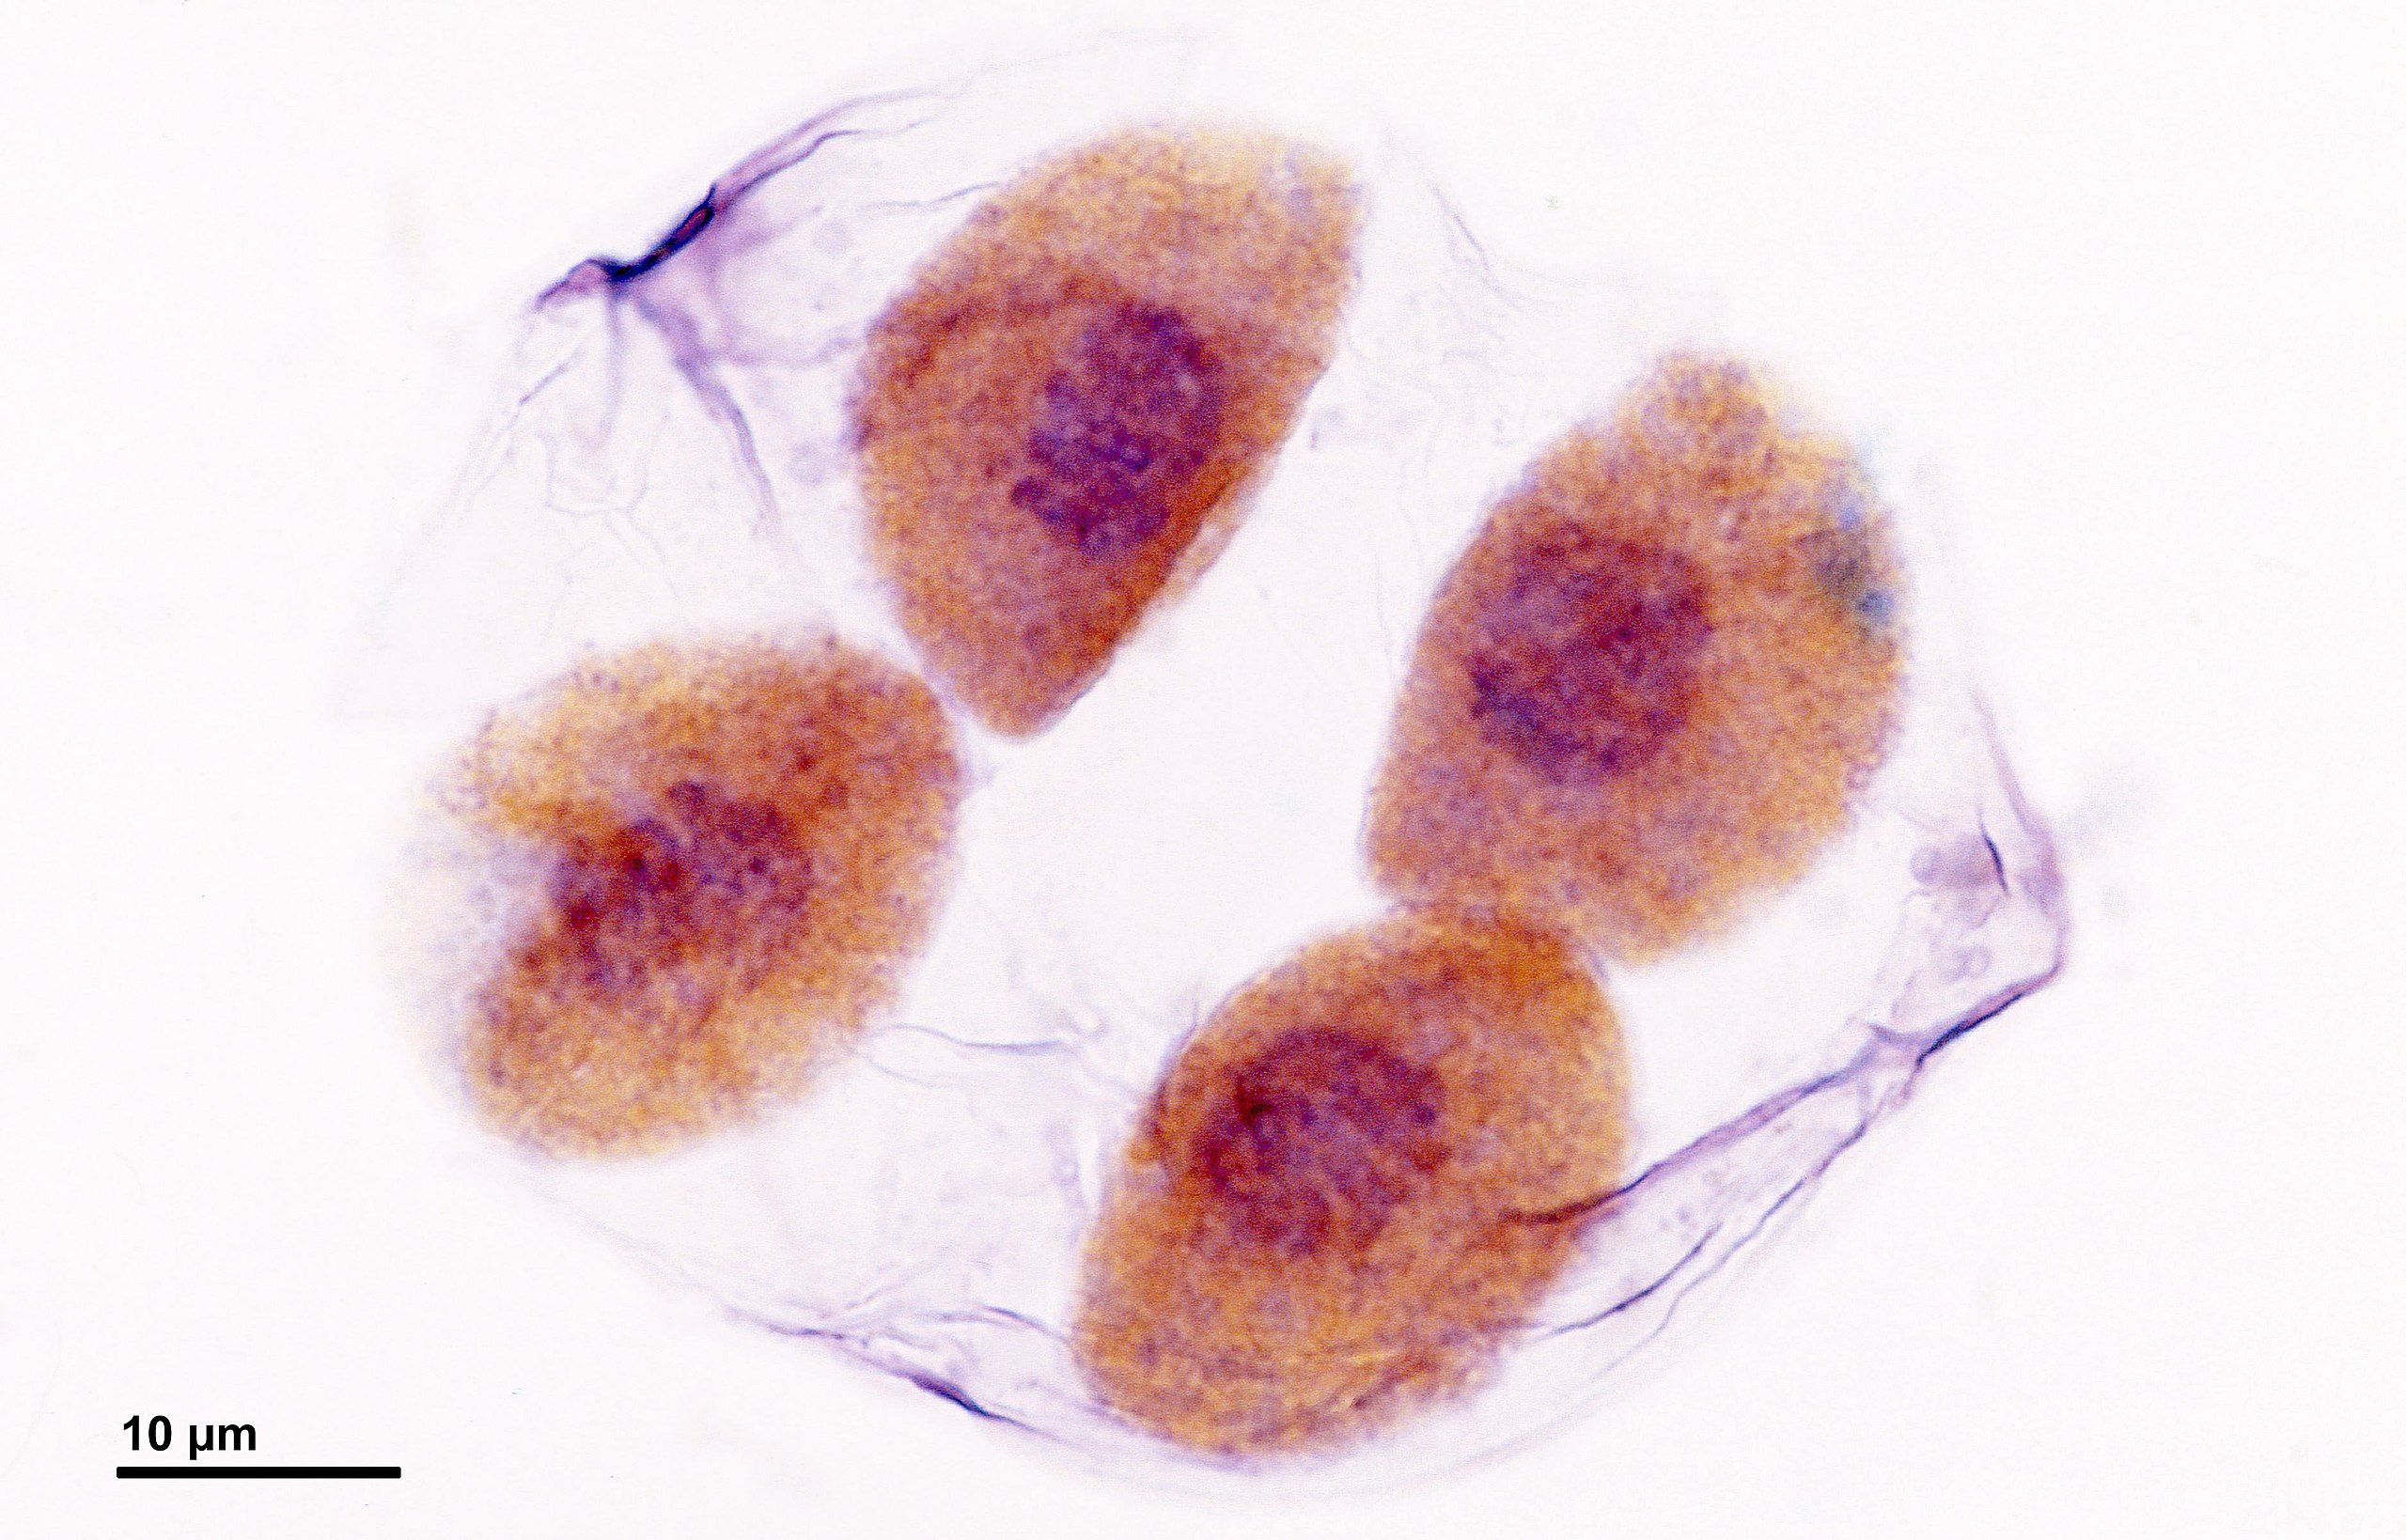 Cuatro células recién formadas, aún dentro de la pared celular de la célula madre. Cada uno tiene un núcleo distinto y su propia pared celular gruesa.